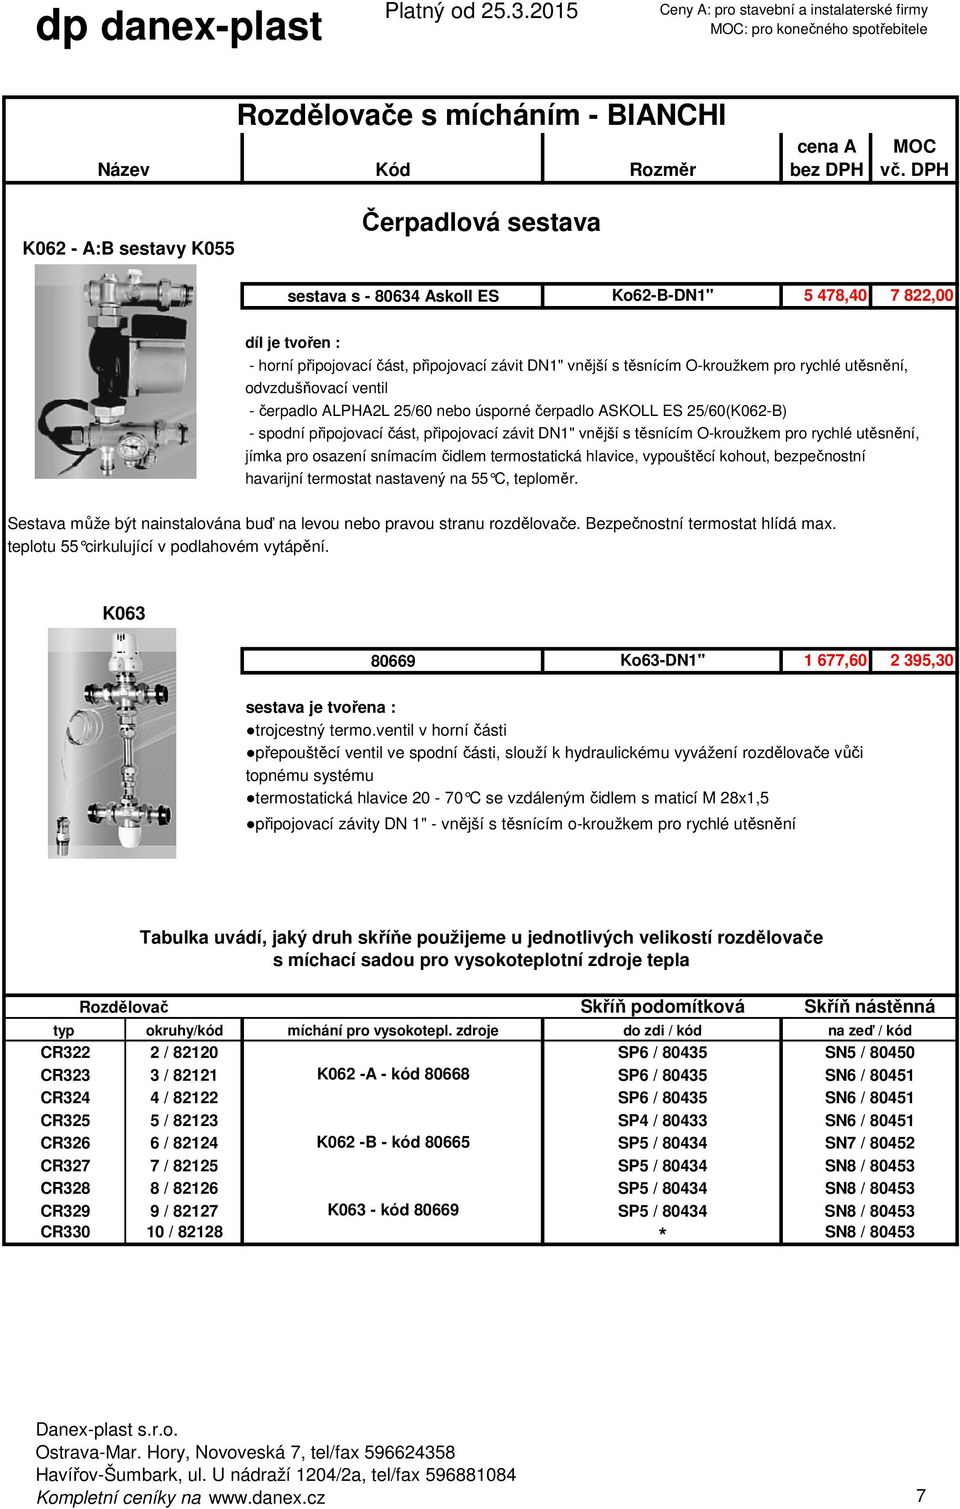 odvzdušňovací ventil - čerpadlo ALPHA2L 25/60 nebo úsporné čerpadlo ASKOLL ES 25/60(K062-B) - spodní připojovací část, připojovací závit DN1" vnější s těsnícím O-kroužkem pro rychlé utěsnění, jímka